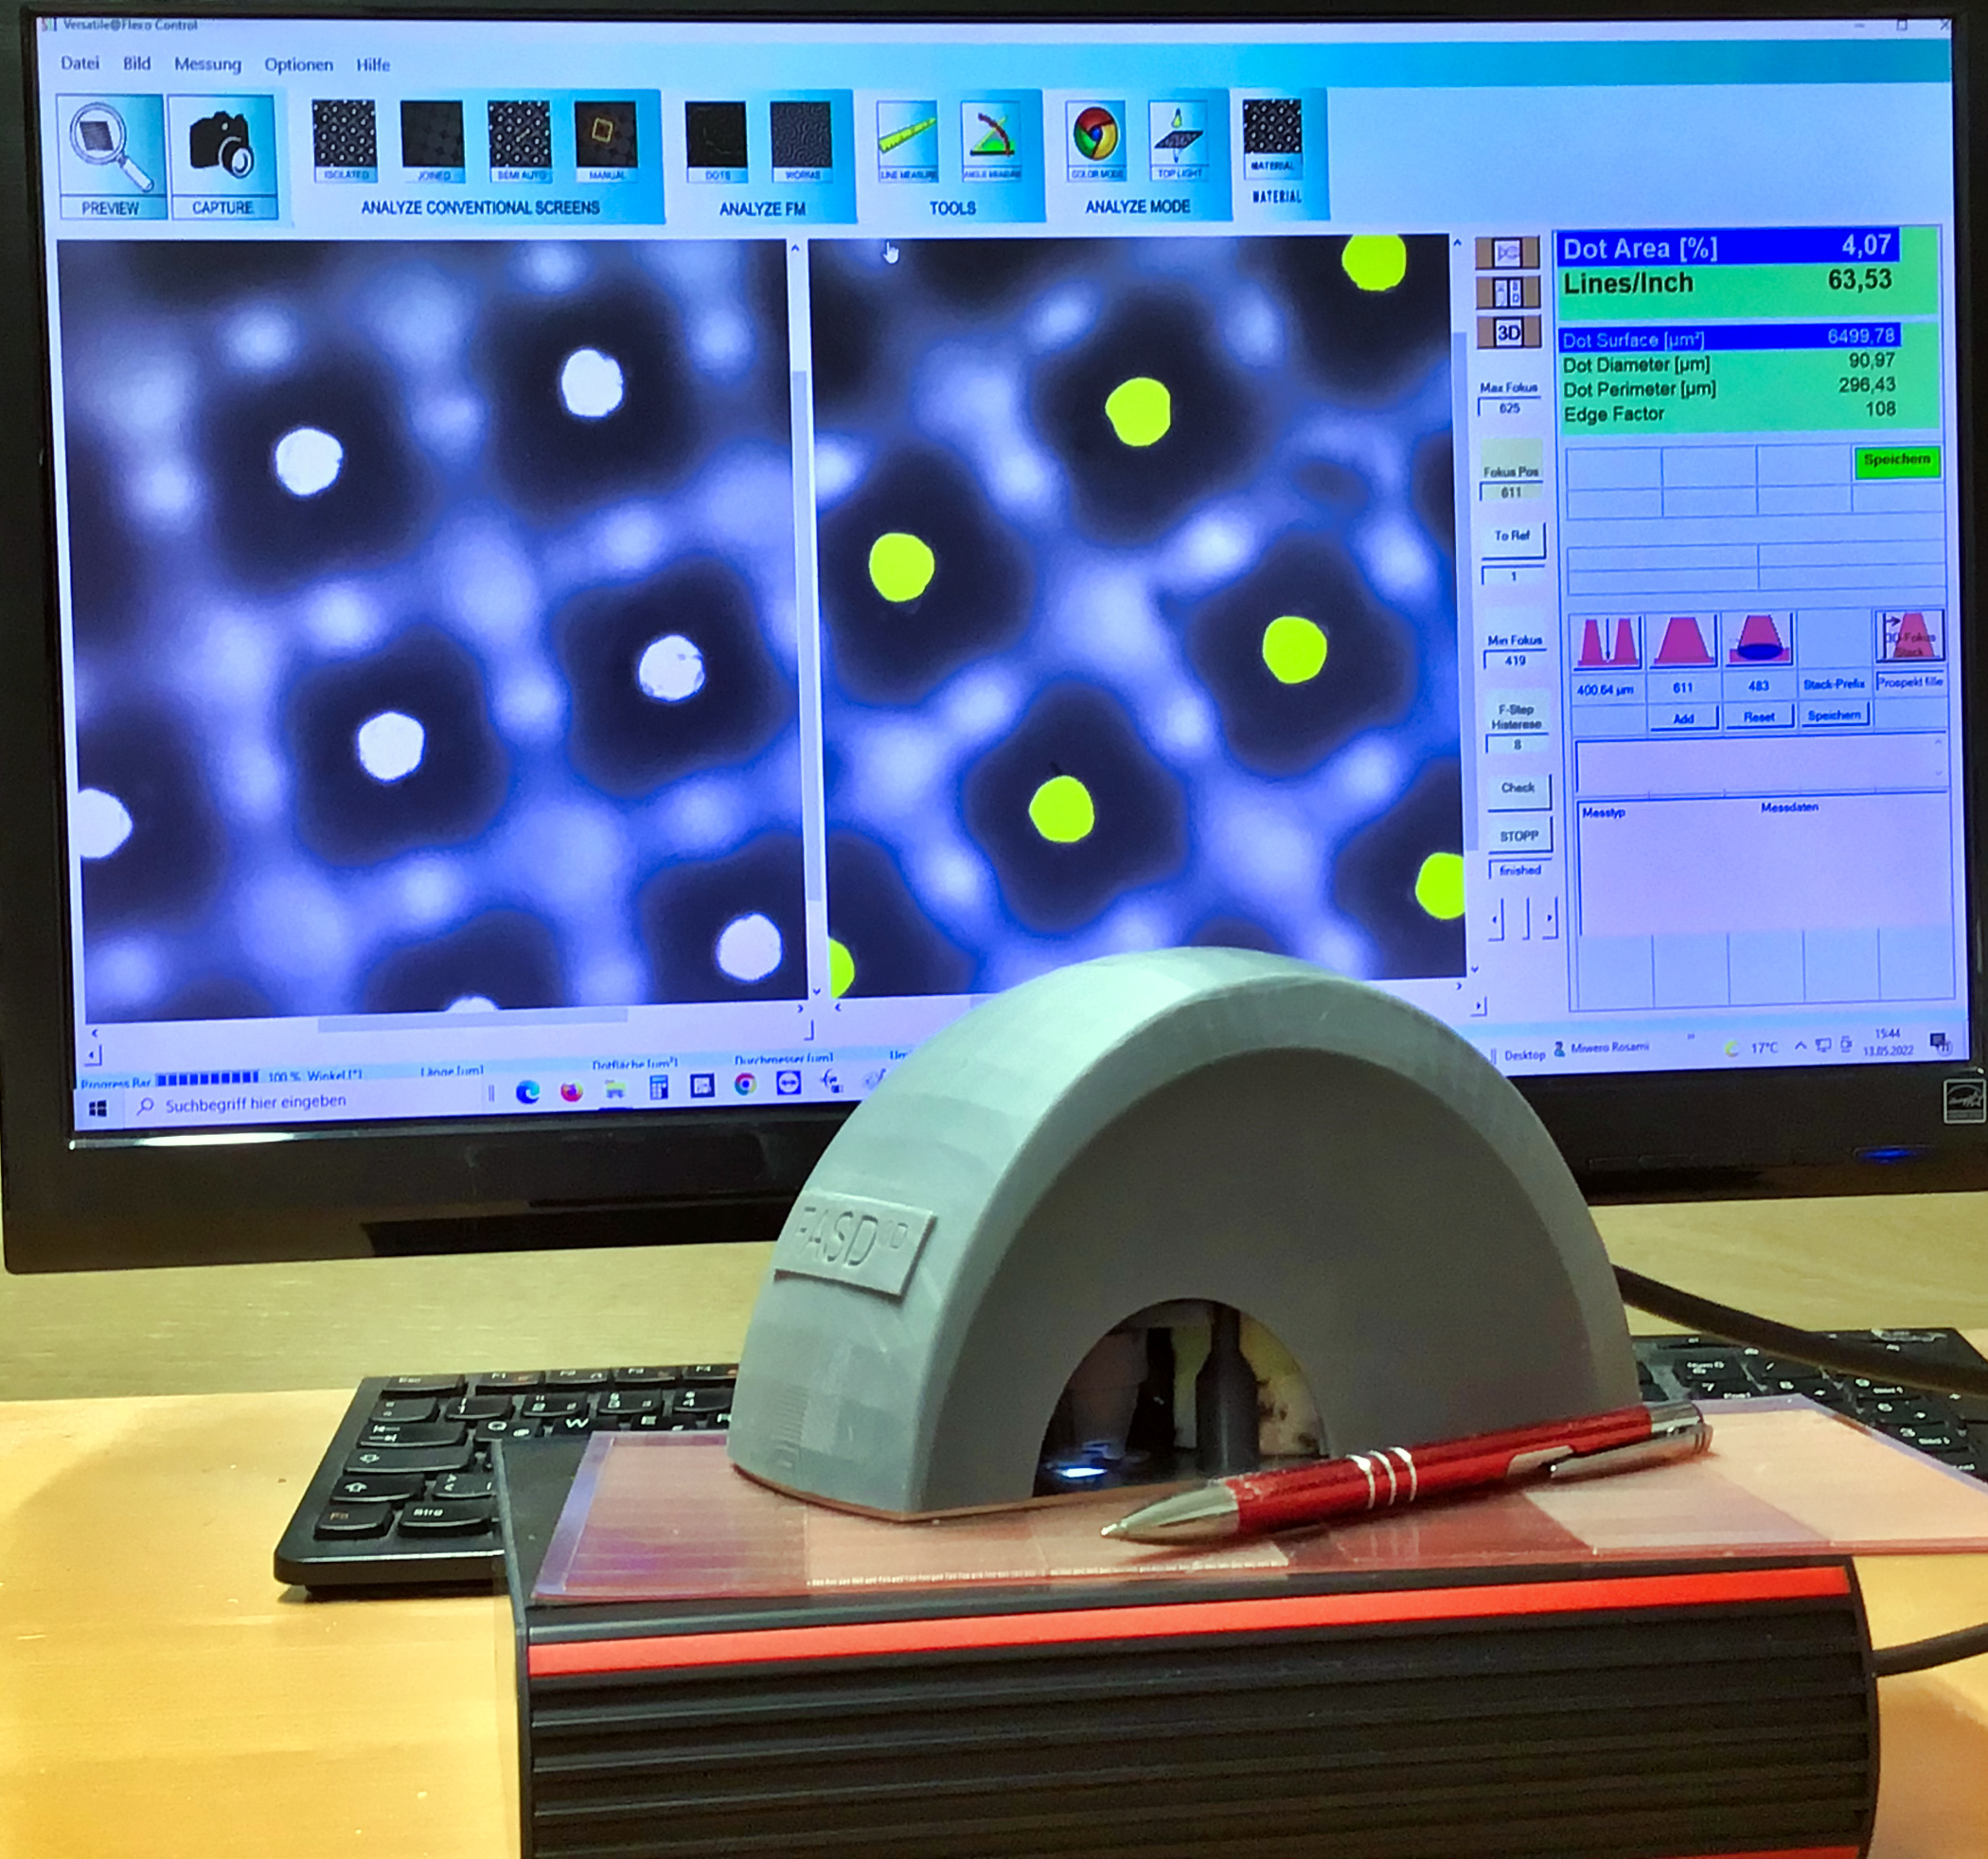 Das neue Messgerät FADS3D von Sibress bietet ein umfassendes Funktionsspektrum für die zwei- und dreidimensionale Analyse von Flexodruckplatten